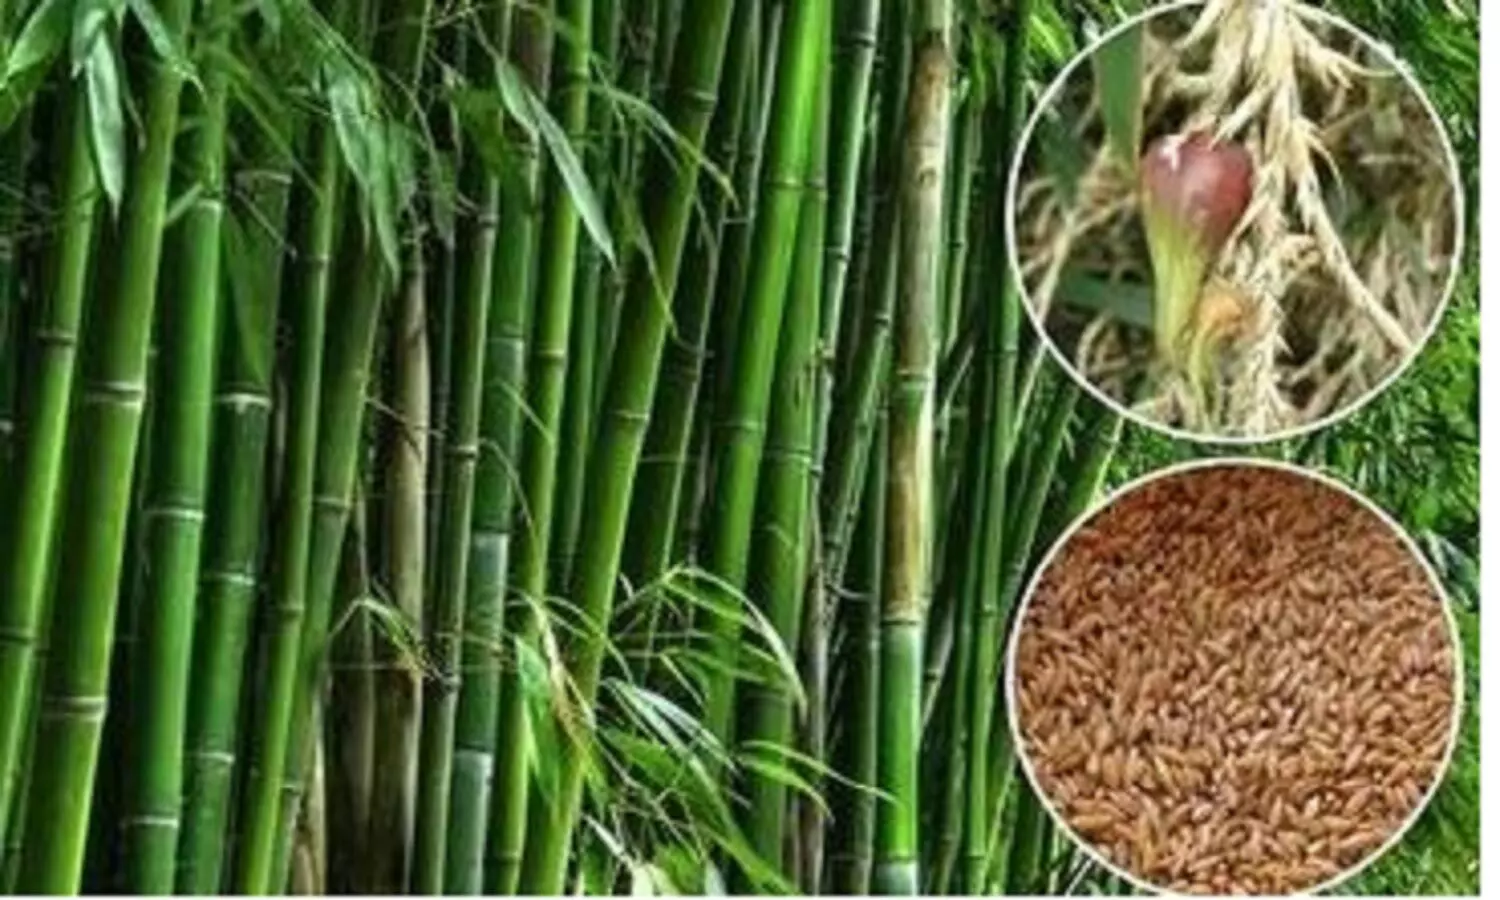 बांस का चावल: चावल की ऐसी वेराइटी जो 100 साल में सिर्फ 1-2 बार उगती है, इसका स्वाद सबसे अलग और कीमत..